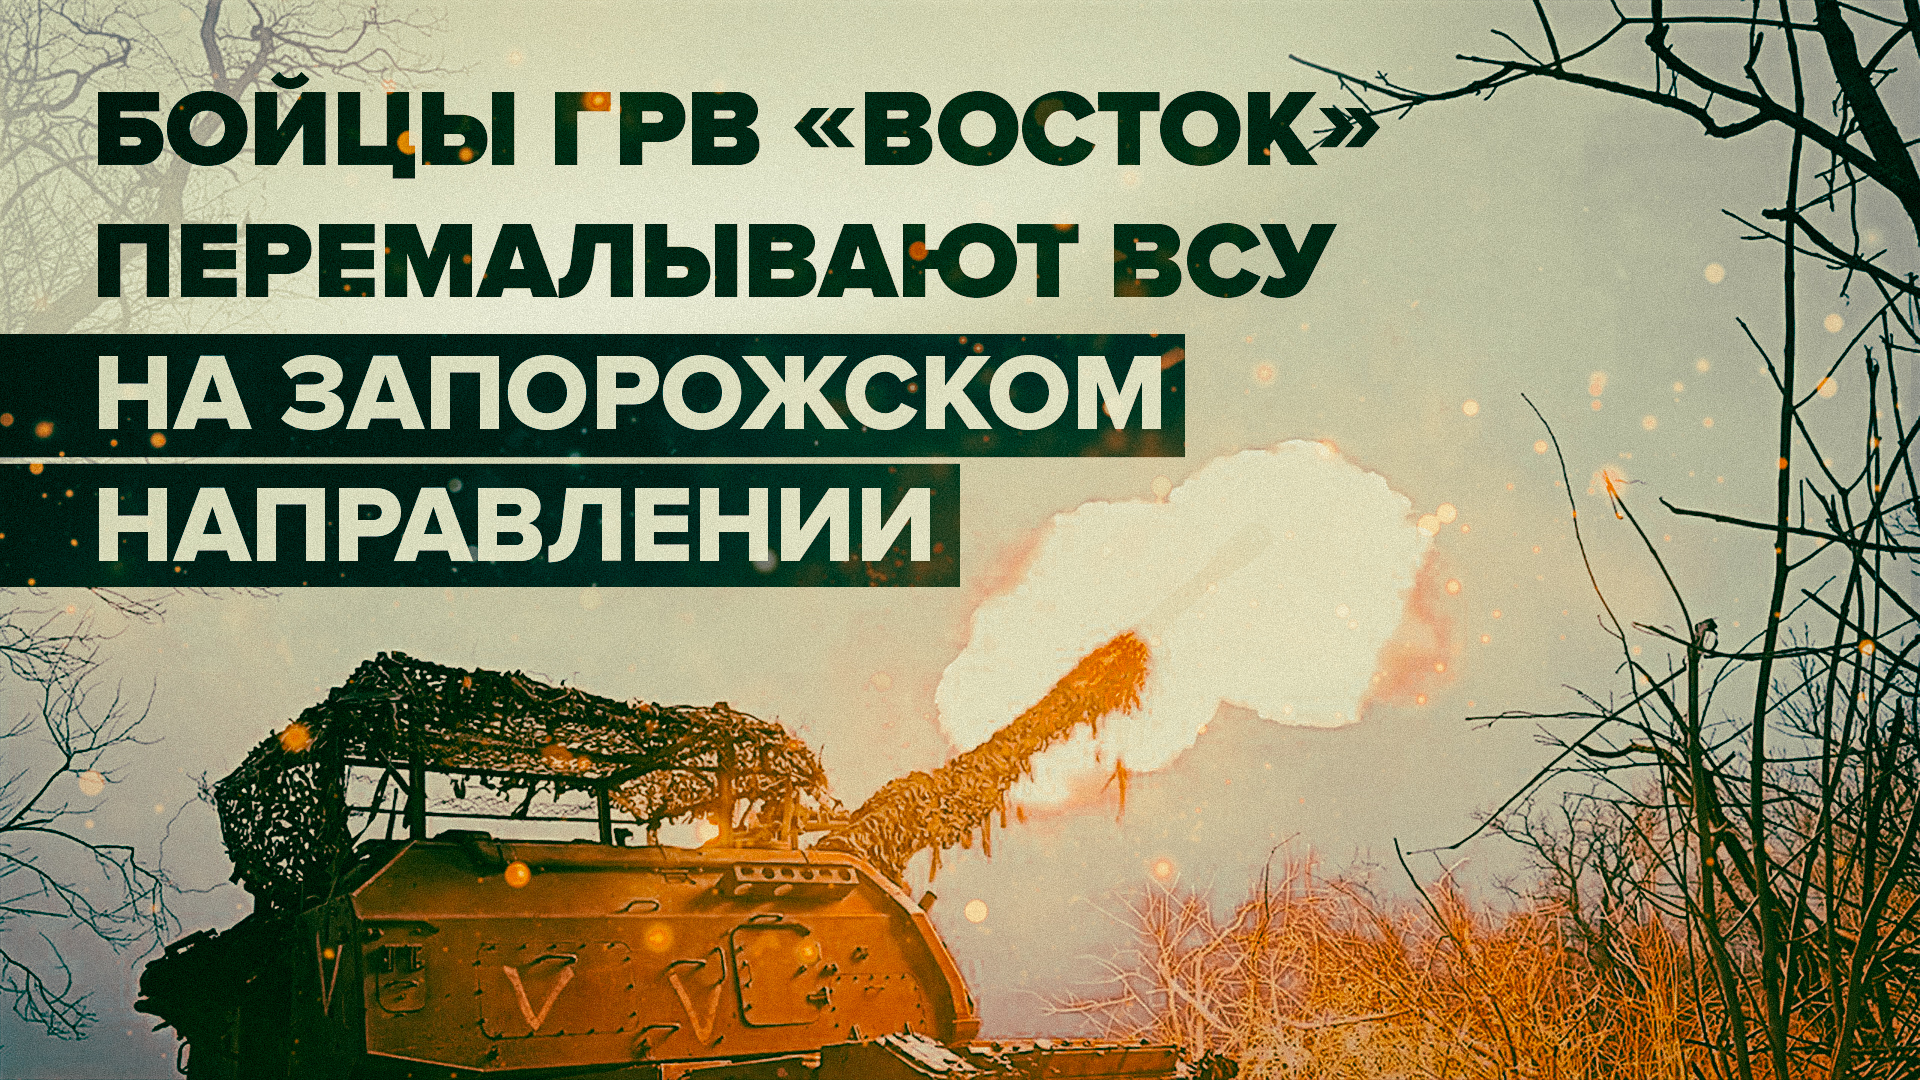 Поддержка пехоты и контрбатарейная борьба: артиллеристы ГрВ «Восток» уничтожают опорники ВСУ